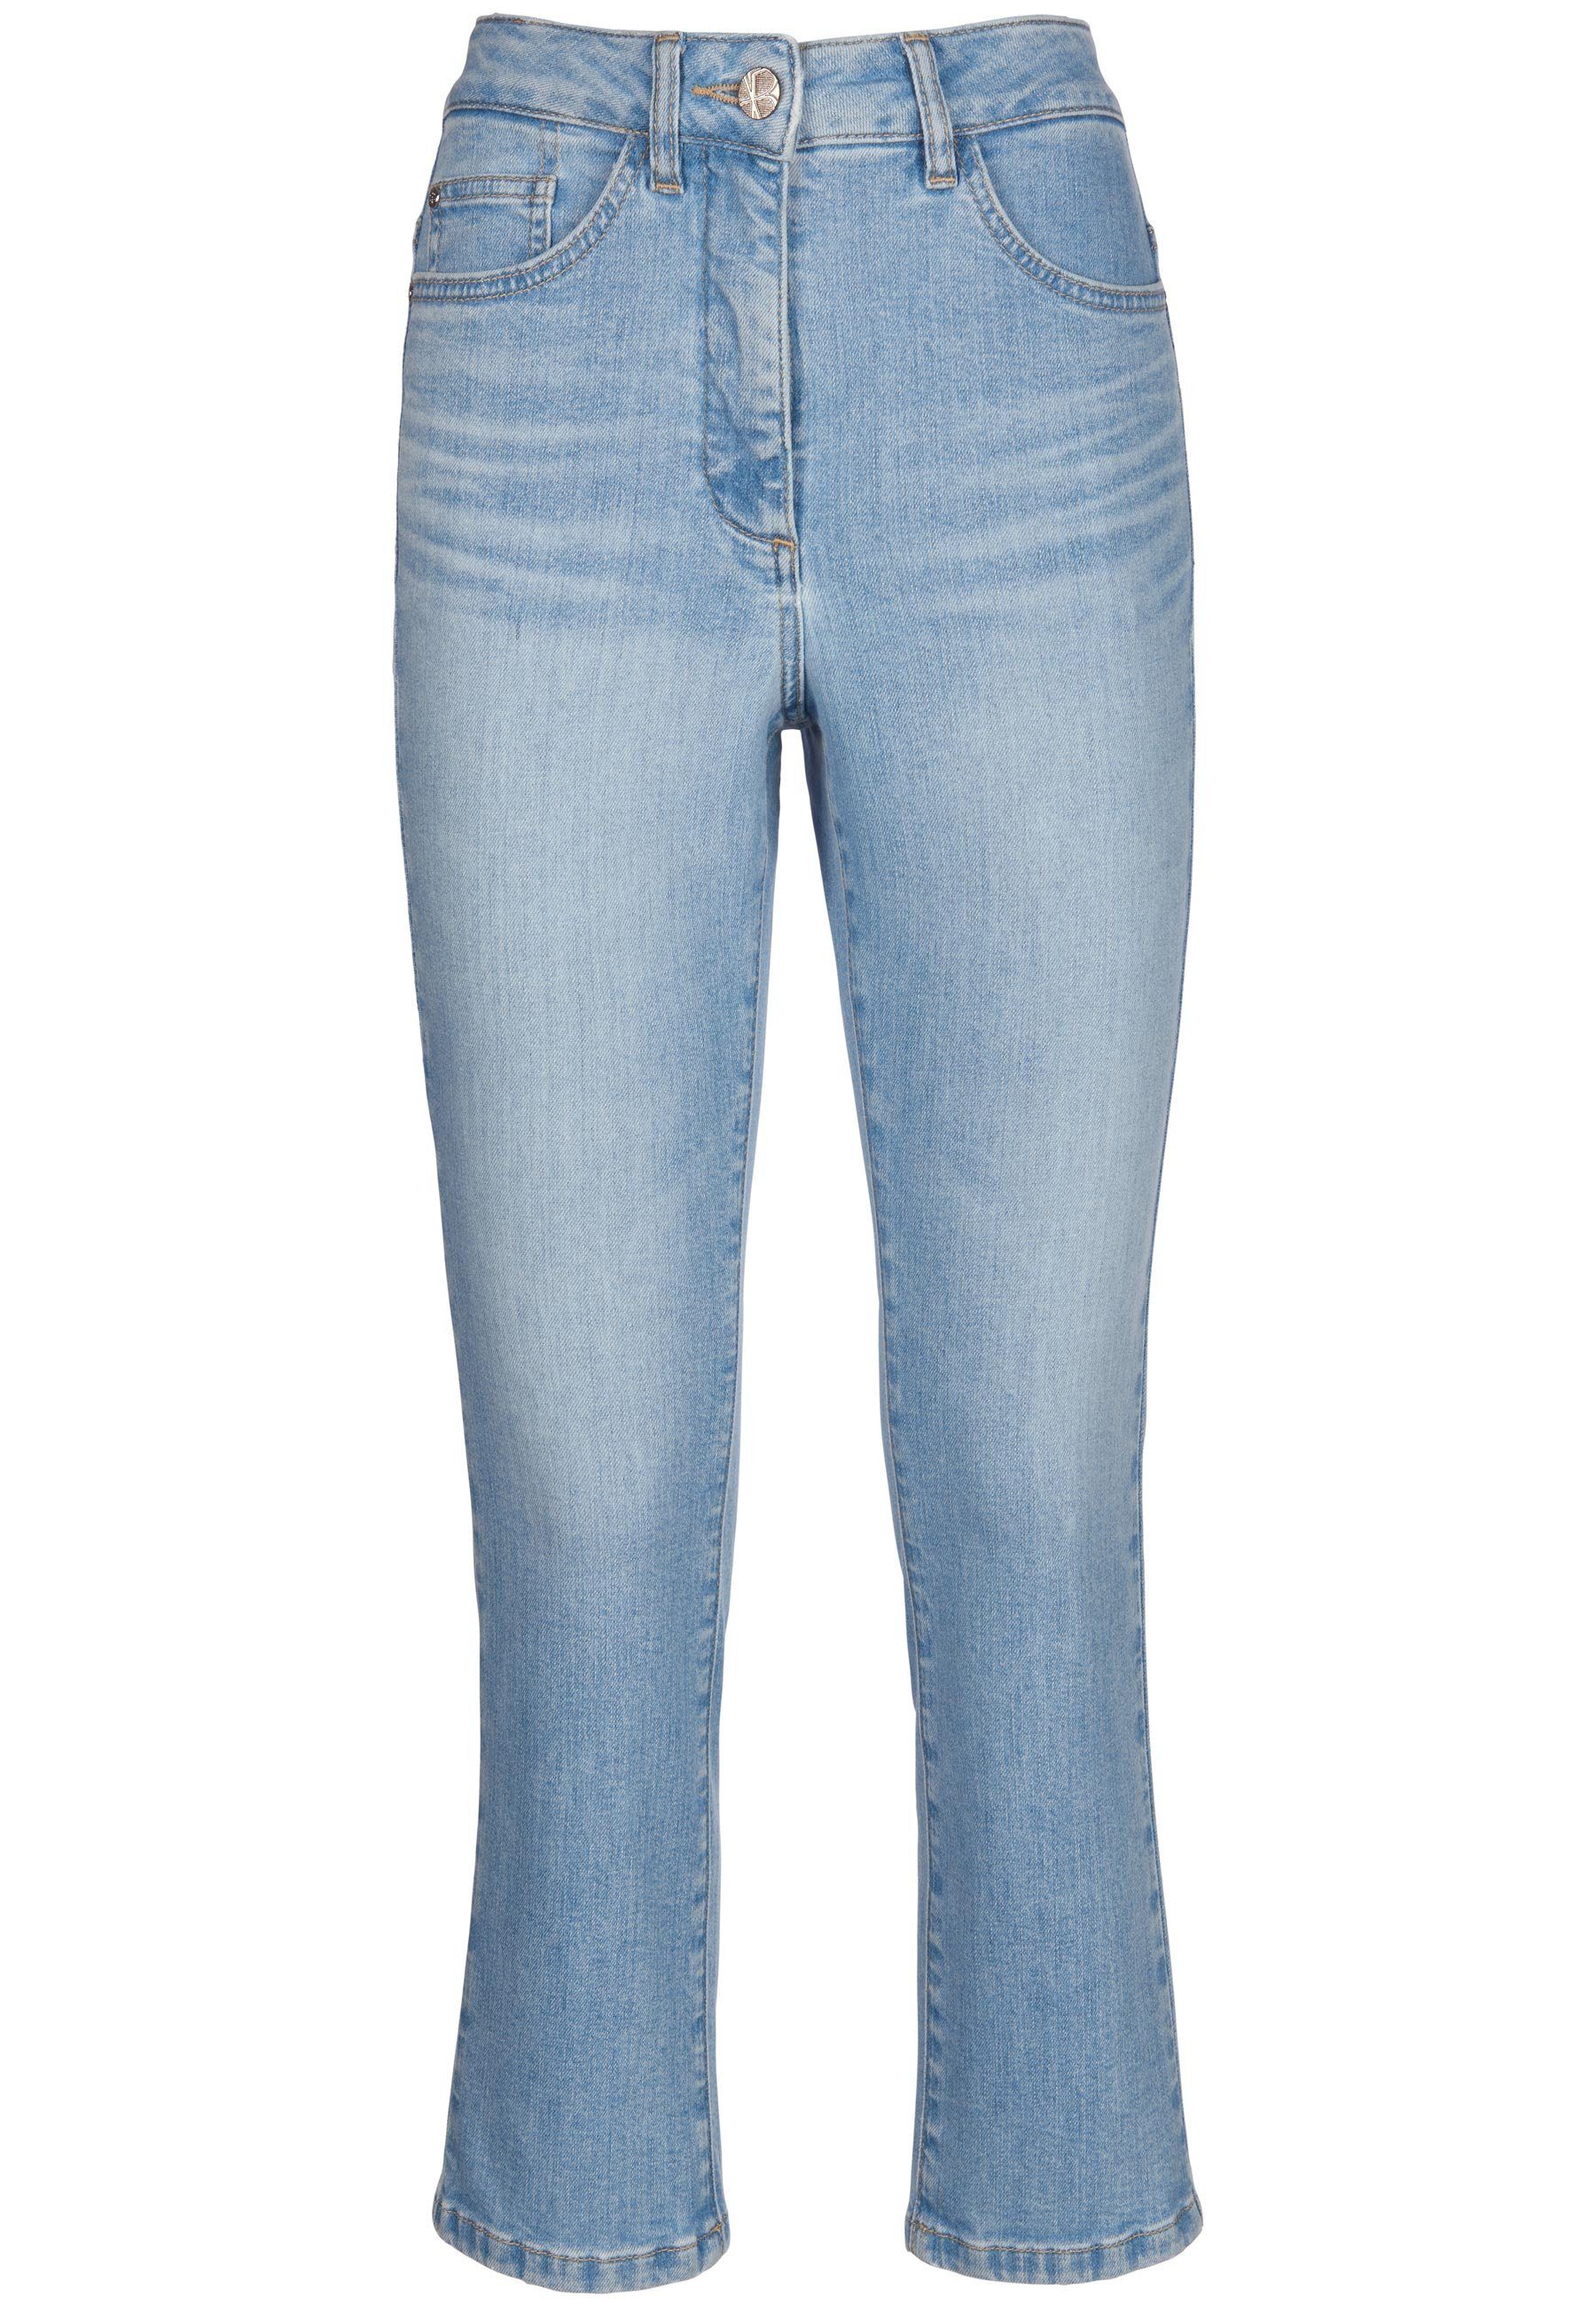 Cotton blue_denim 7/8-Jeans Basler